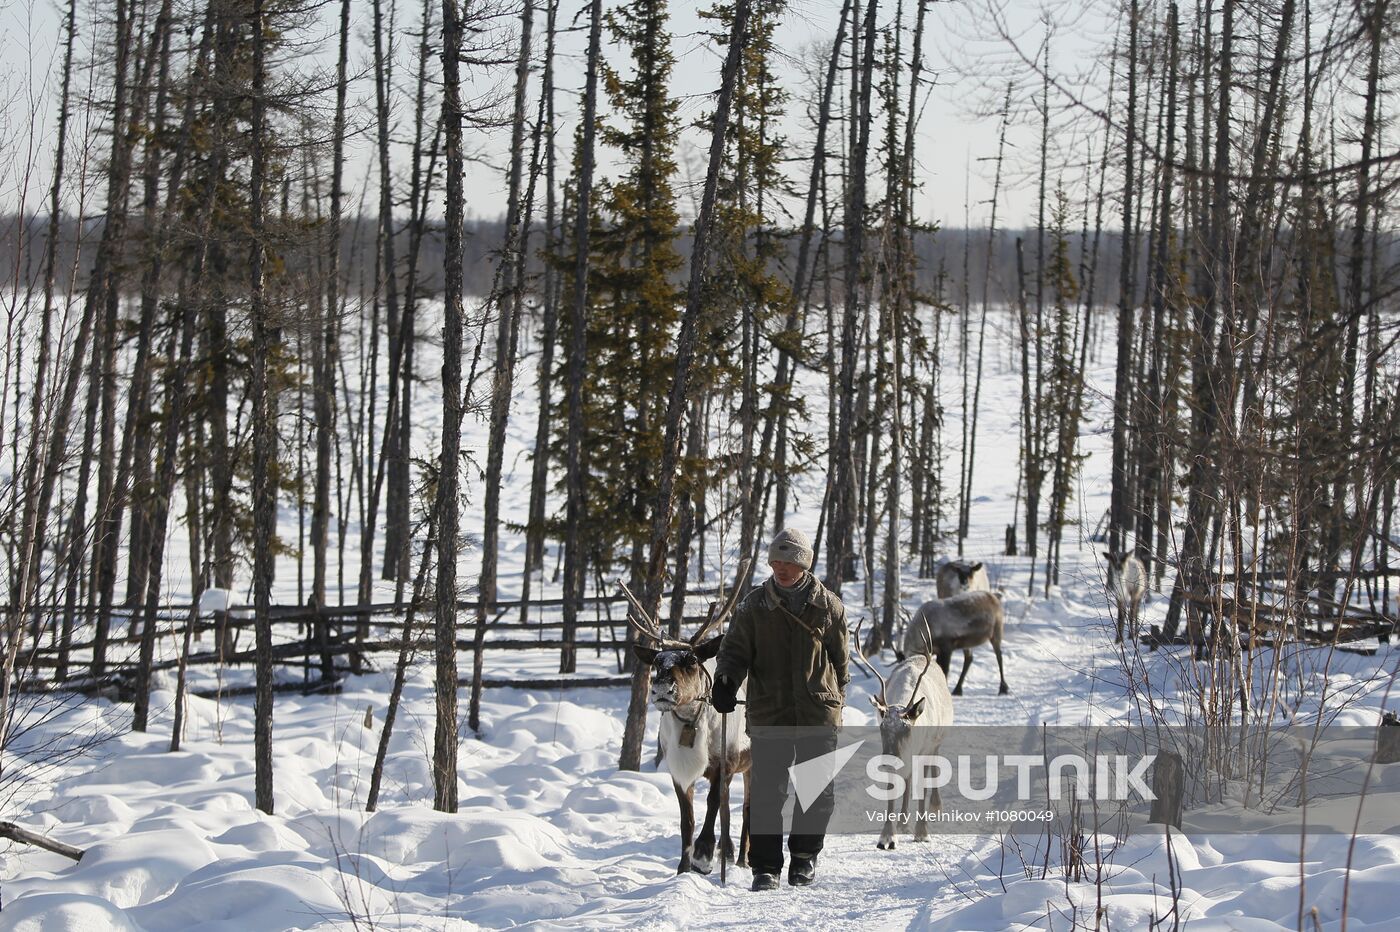 Last nomadic reindeer herders of Sychegir ethnic group